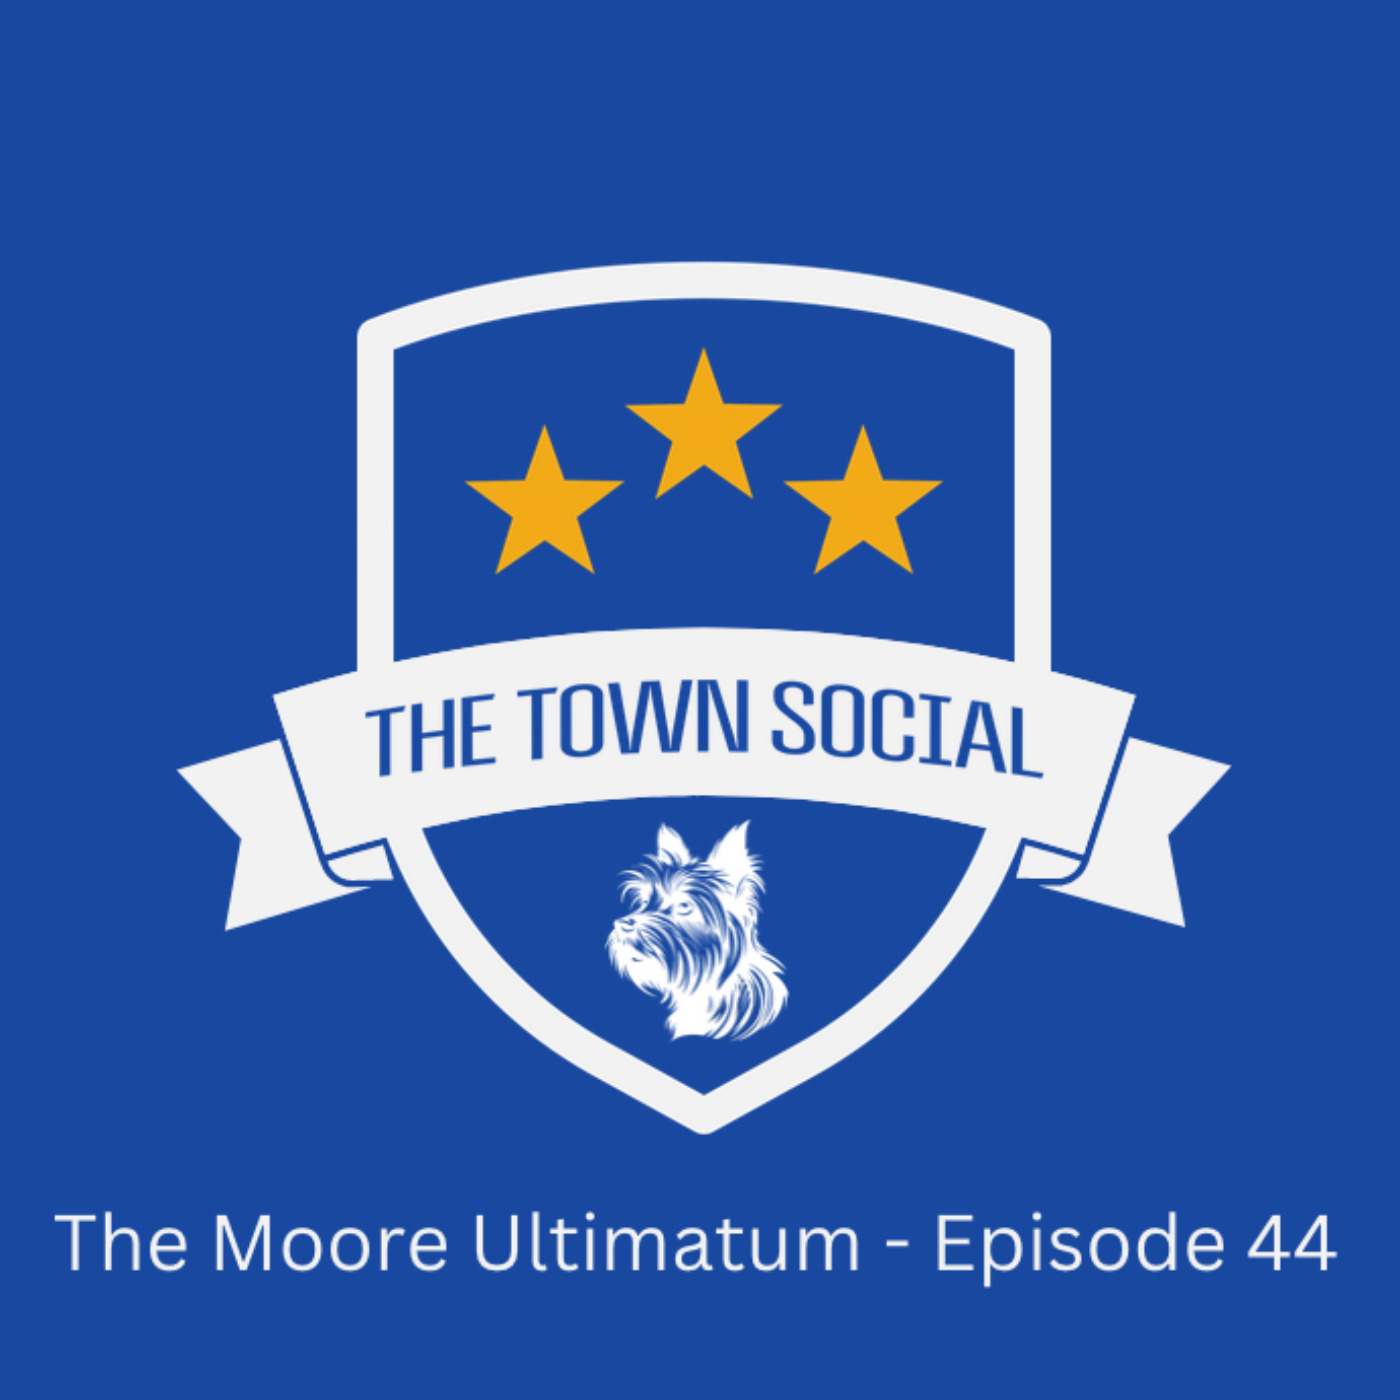 The Moore Ultimatum - Episode 44